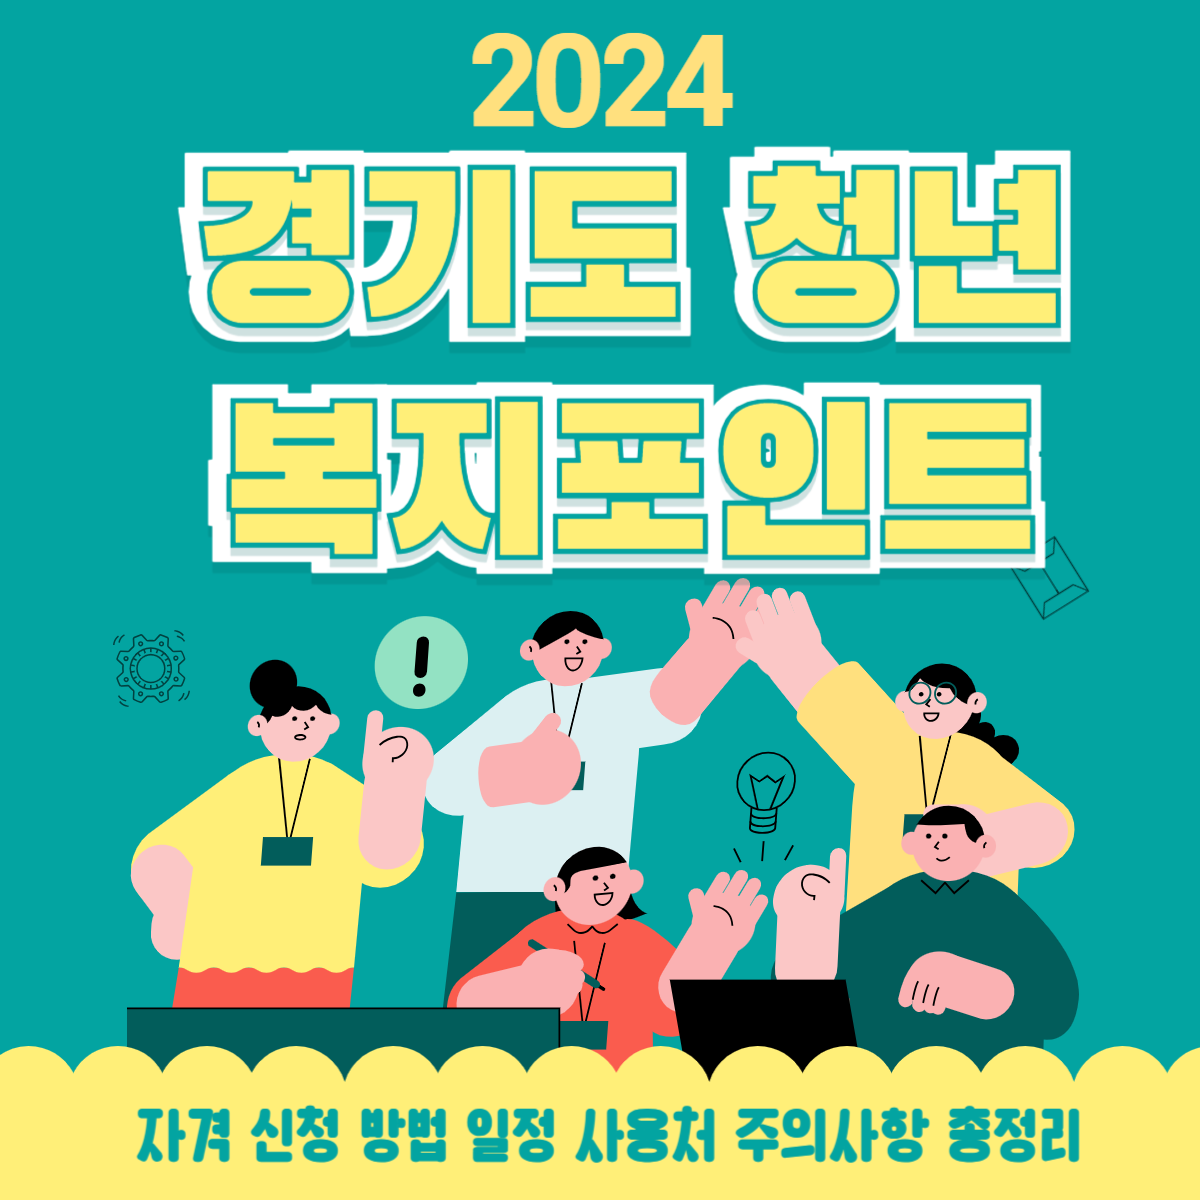 2024 경기도 청년복지포인트를 안내하는 일러스트 썸네일